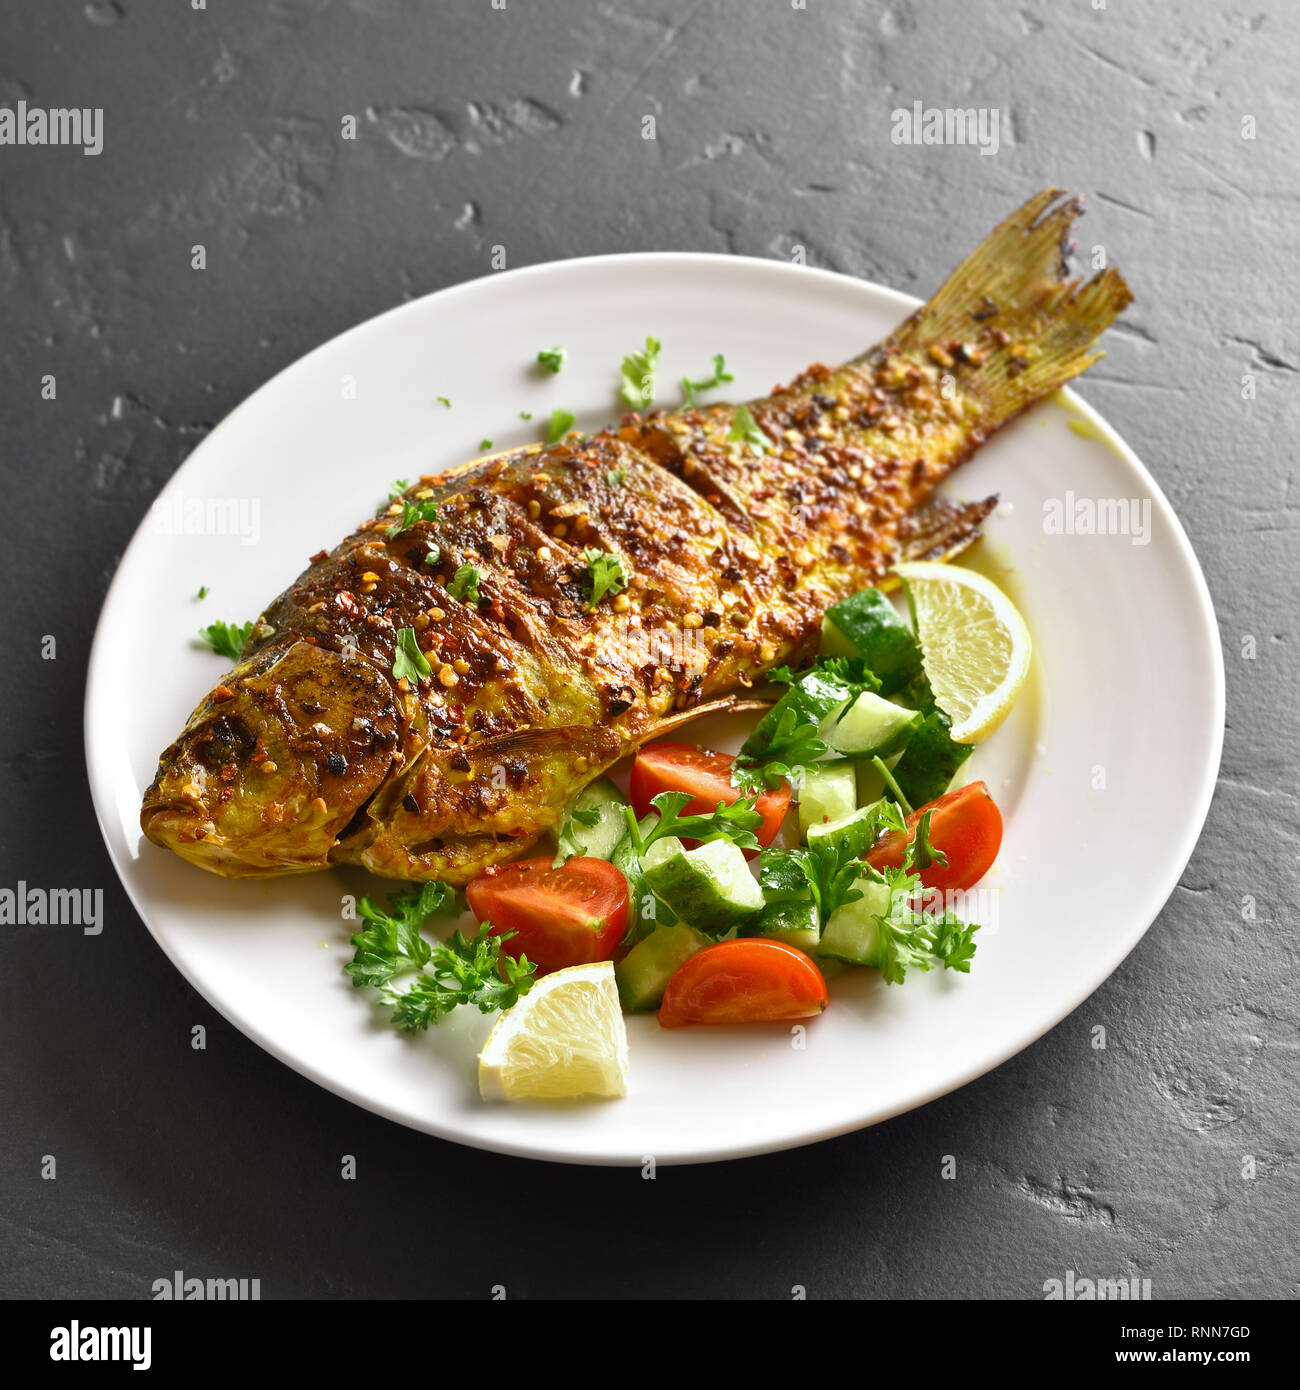 In der Nähe von Ofen gebackenen Fisch auf dem Teller über schwarzen Stein. Gesunde Meeresfrüchte. Lecker gekochten Fisch Salat von frischem Gemüse (Gurke, Tomate, Gr Stockfoto